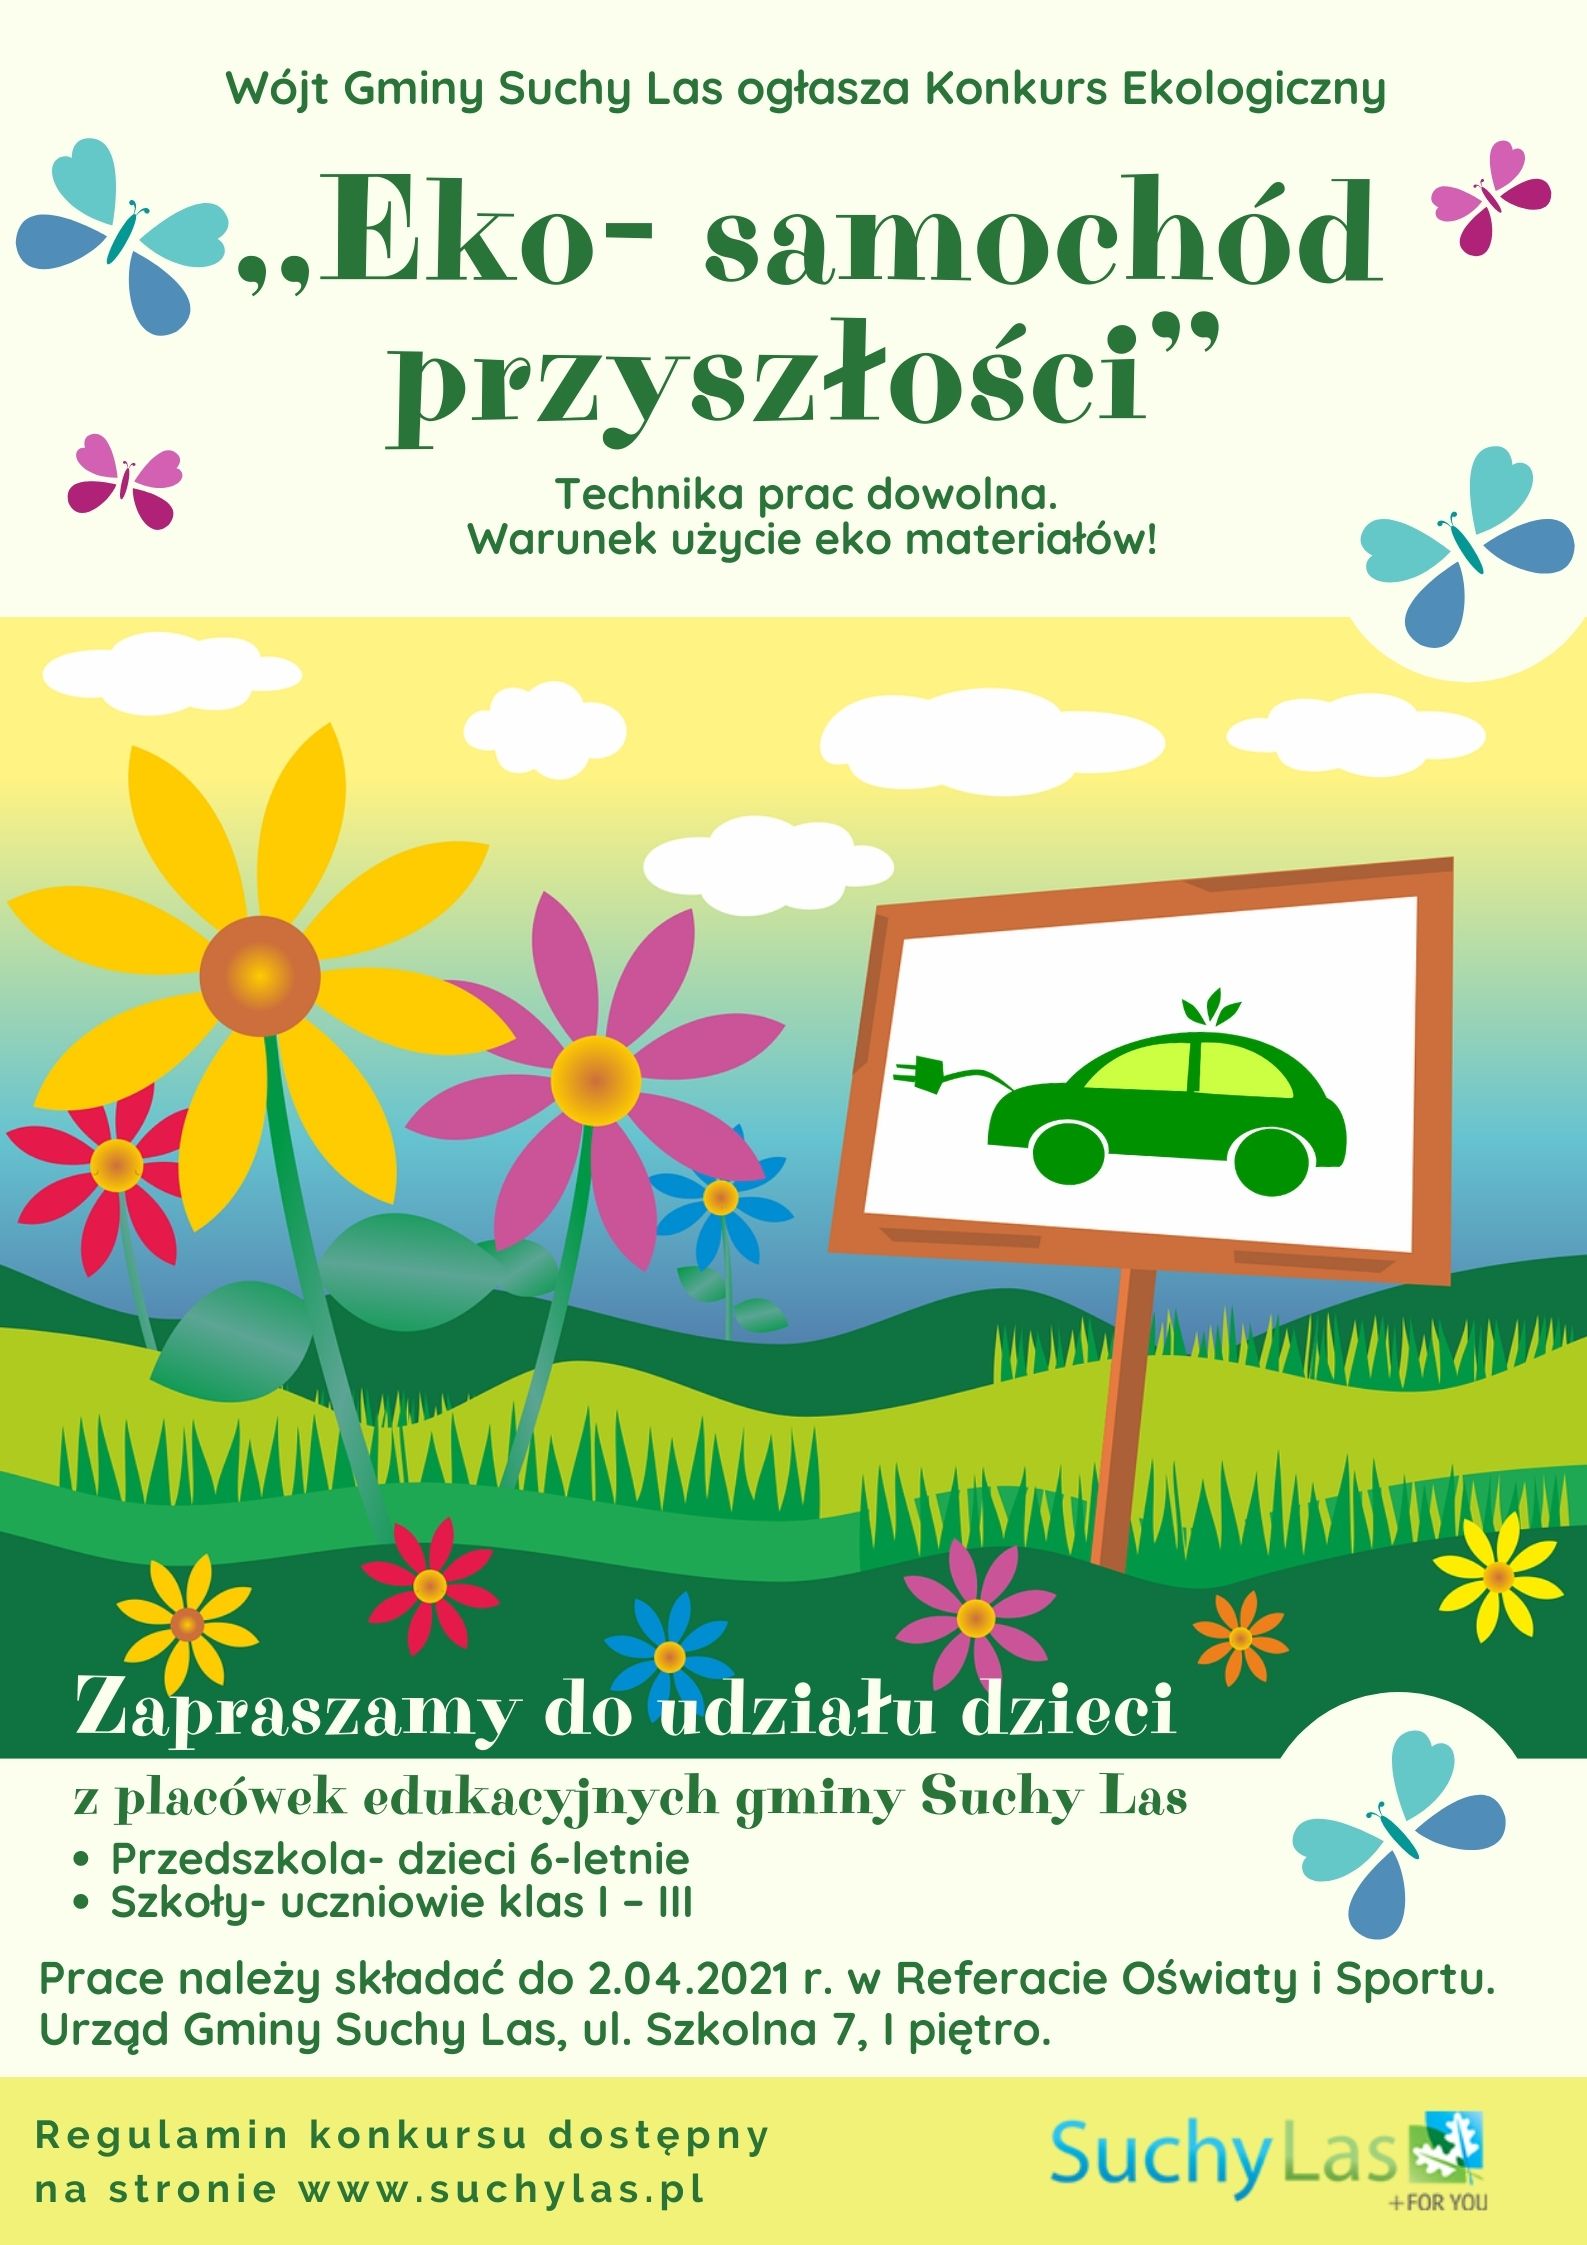 Plakat informujący o konkursie "Eko samochód przyszłości"